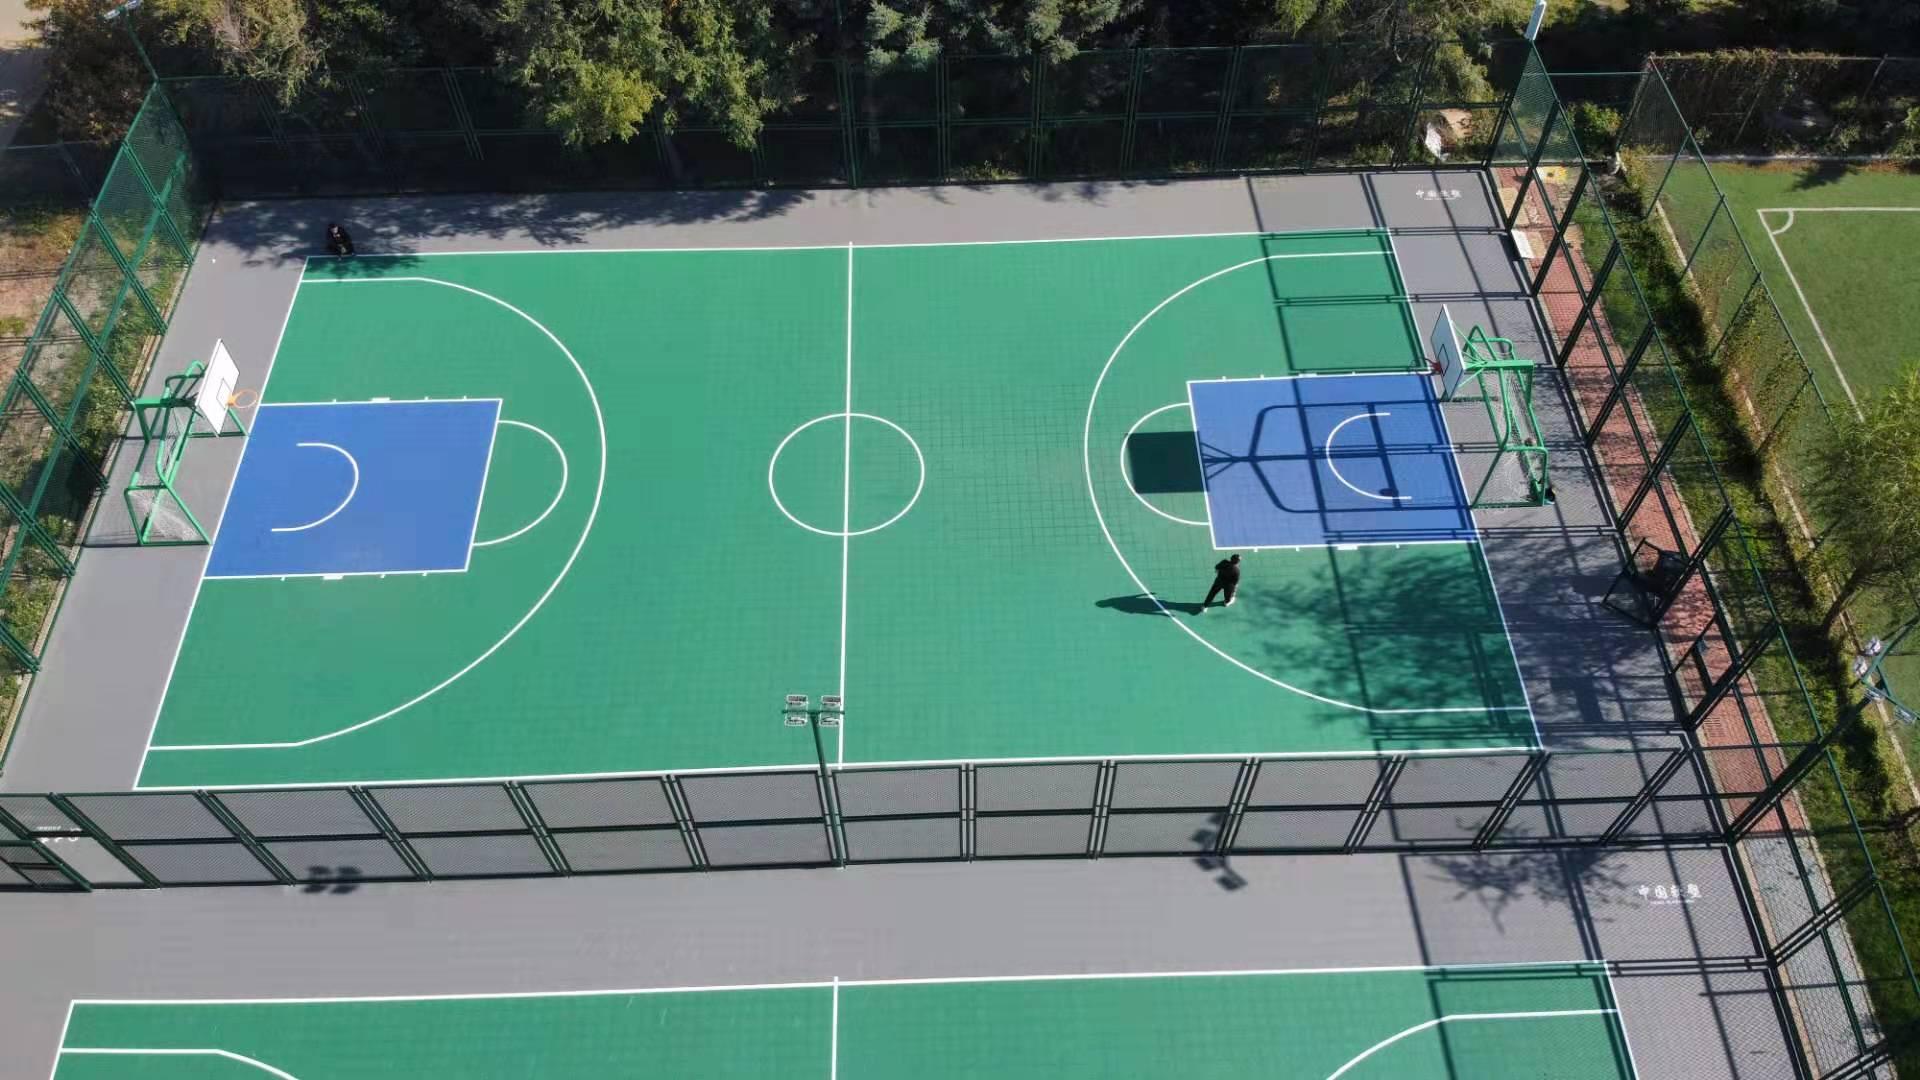 多功能运动场、篮球场围网、篮球场灯光、篮球场音响、篮球场内打羽毛球、品牌篮球架、悬浮地板、拼装地板